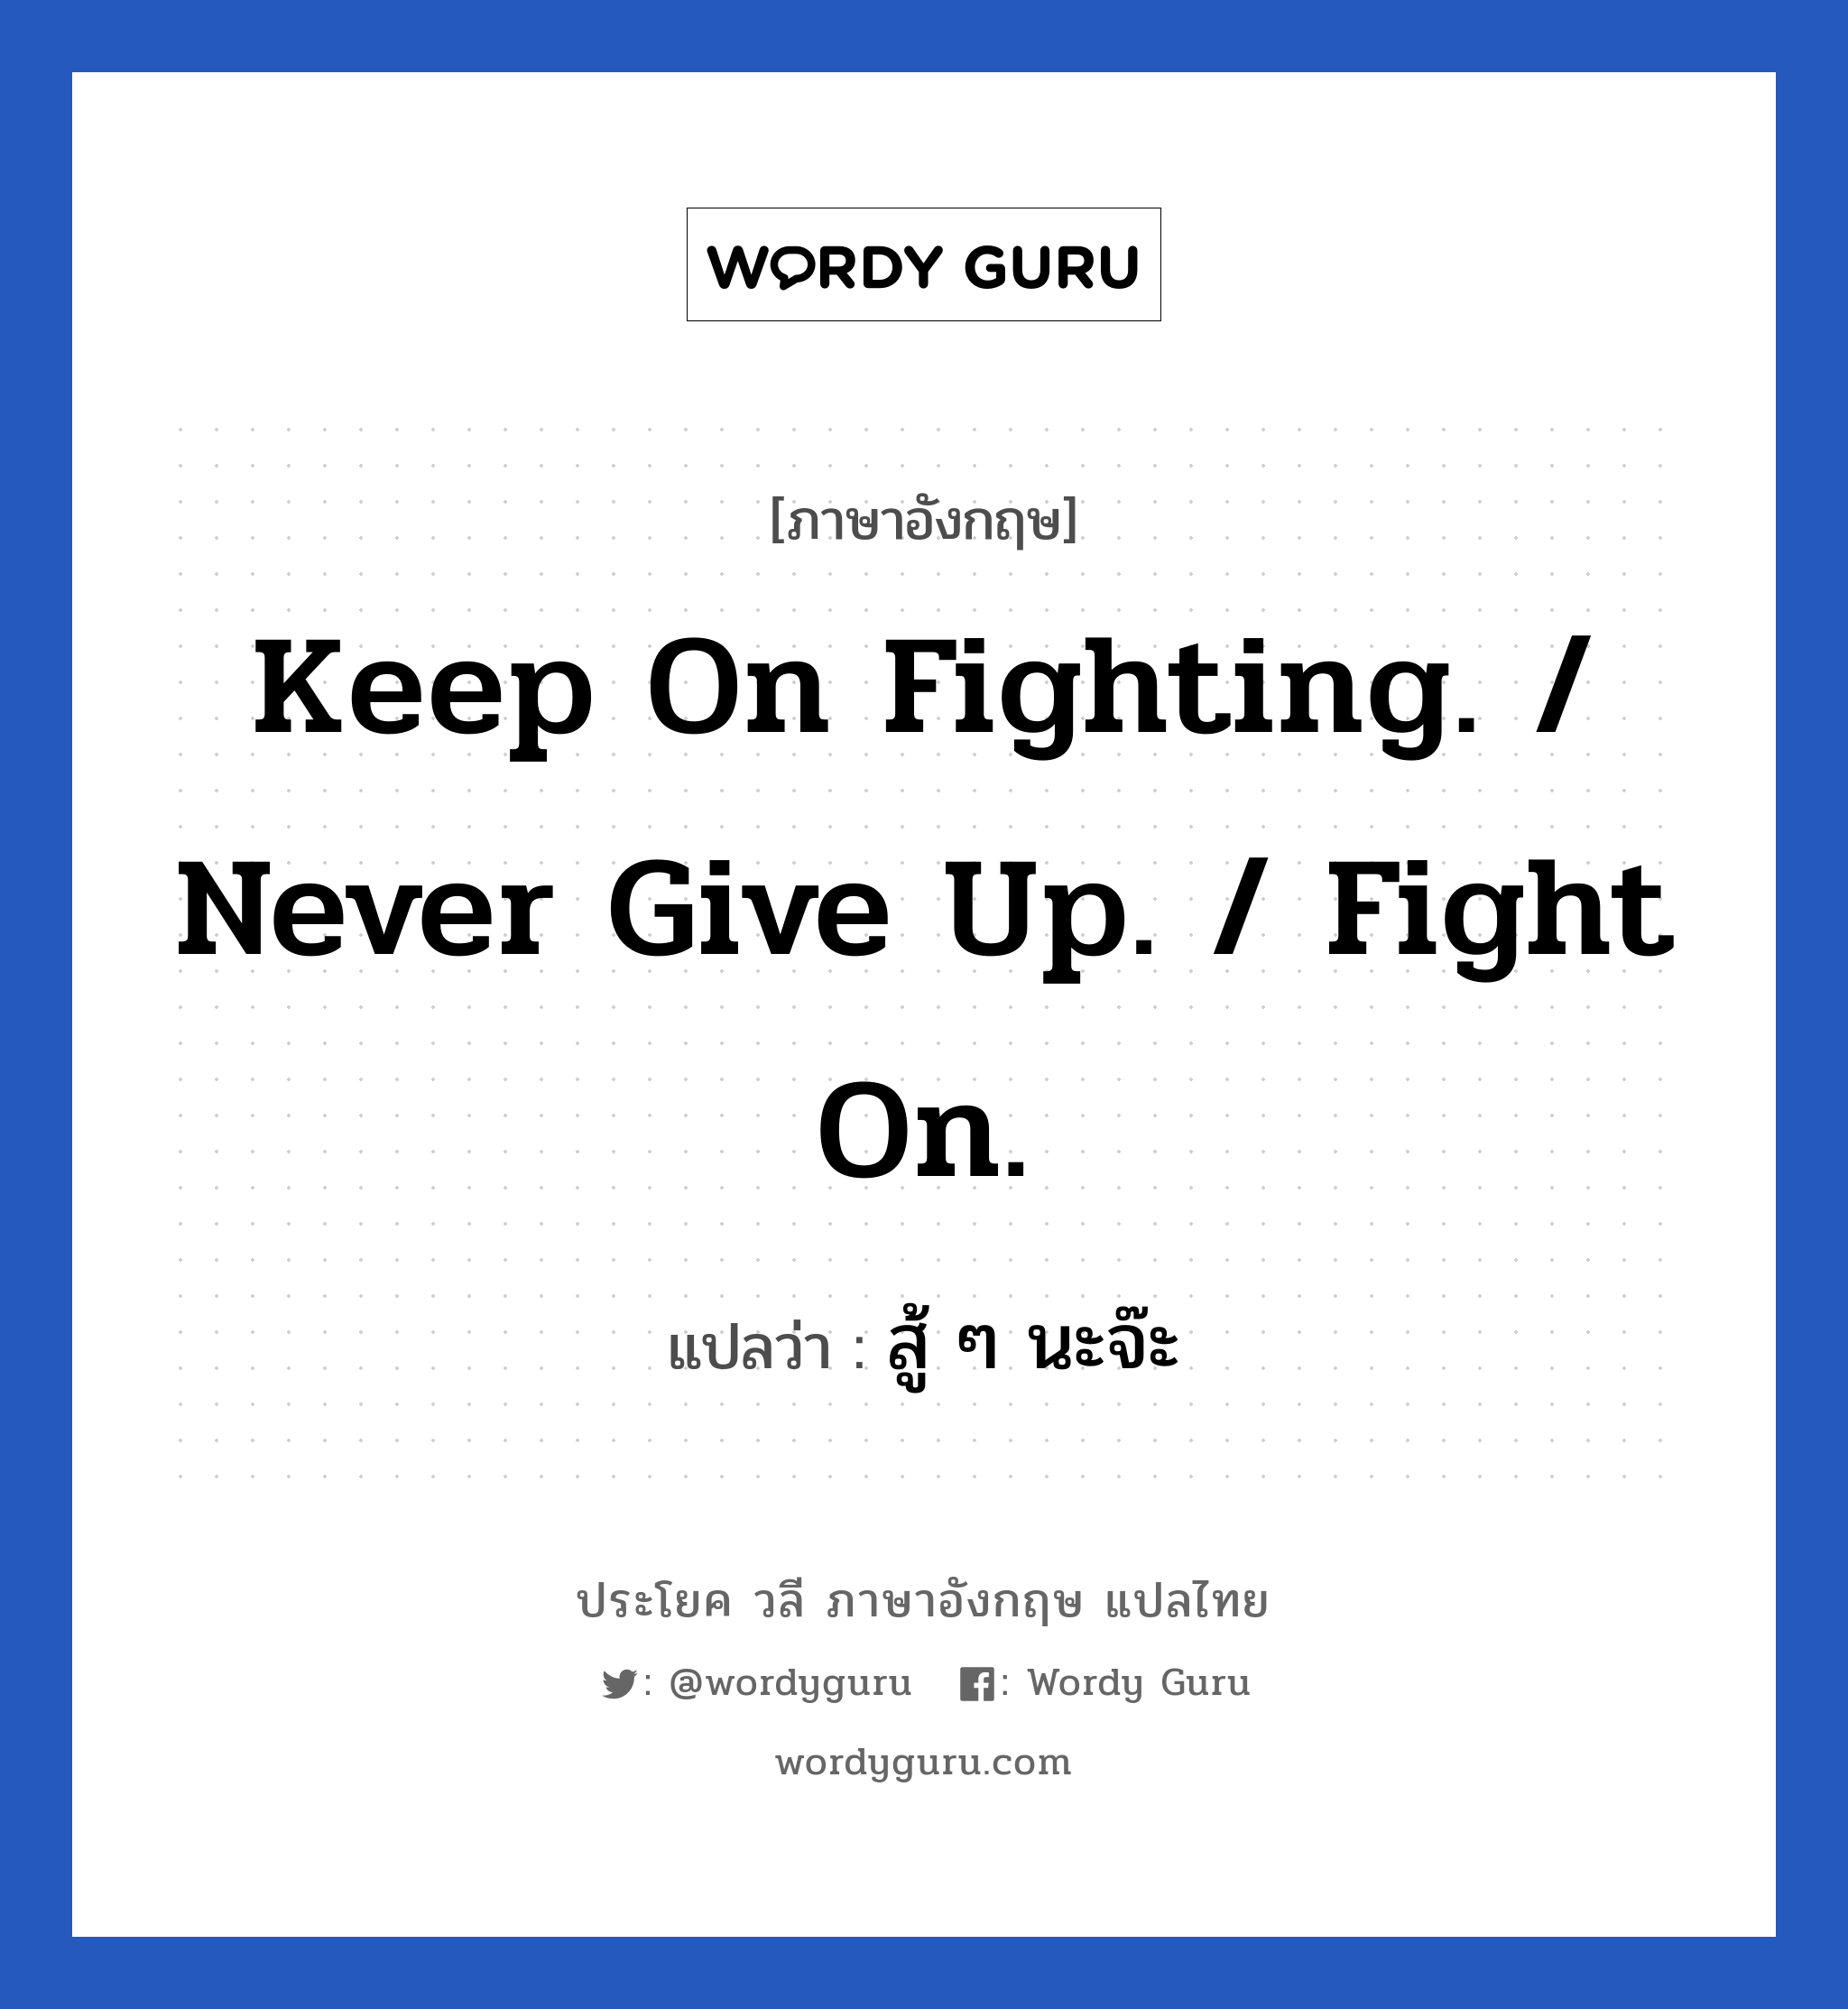 Keep on fighting. / Never give up. / Fight on. แปลว่า? เป็นประโยคในกลุ่มประเภท ให้กำลังใจ, วลีภาษาอังกฤษ Keep on fighting. / Never give up. / Fight on. แปลว่า สู้ ๆ นะจ๊ะ หมวด ให้กำลังใจ